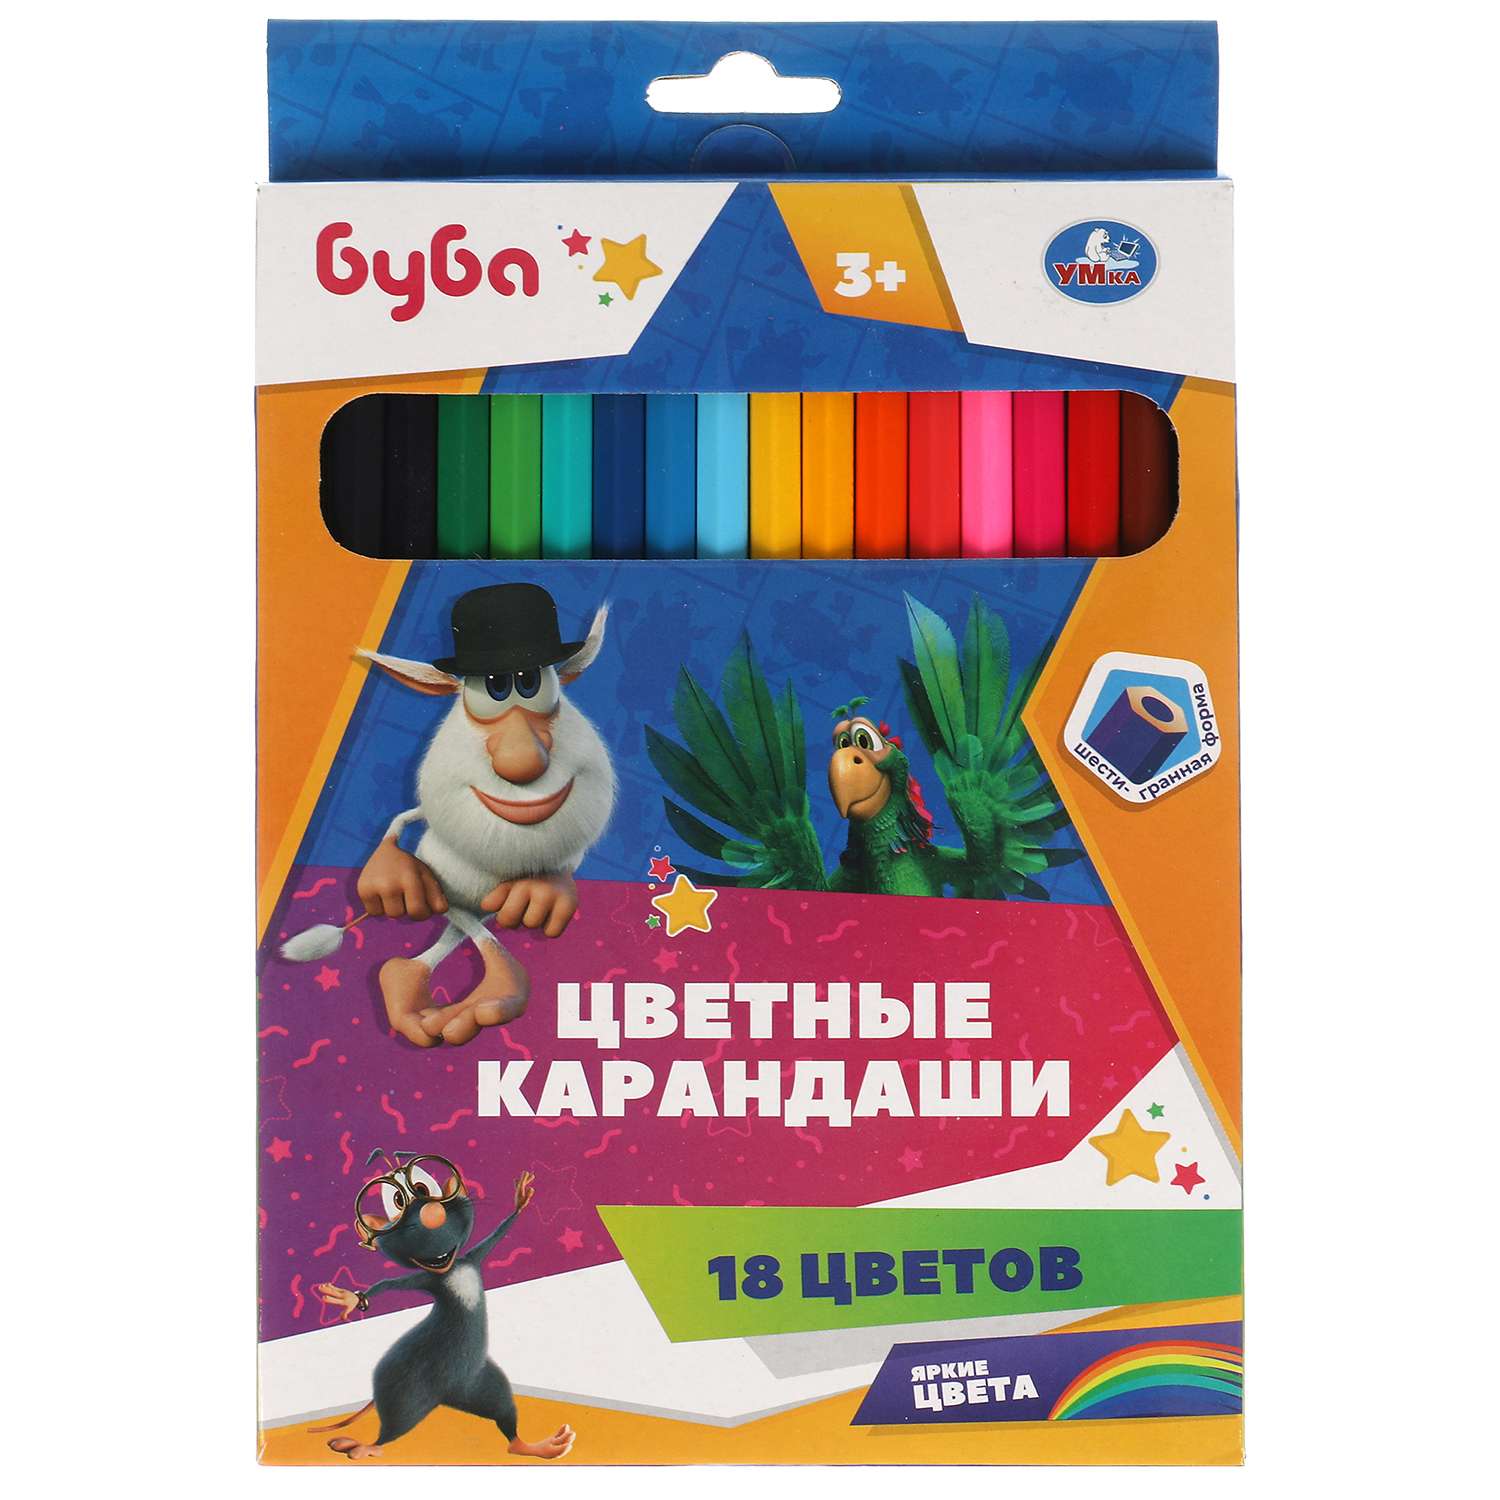 Цветные карандаши Умка Буба 18 цветов шестигранные 321055 - фото 1